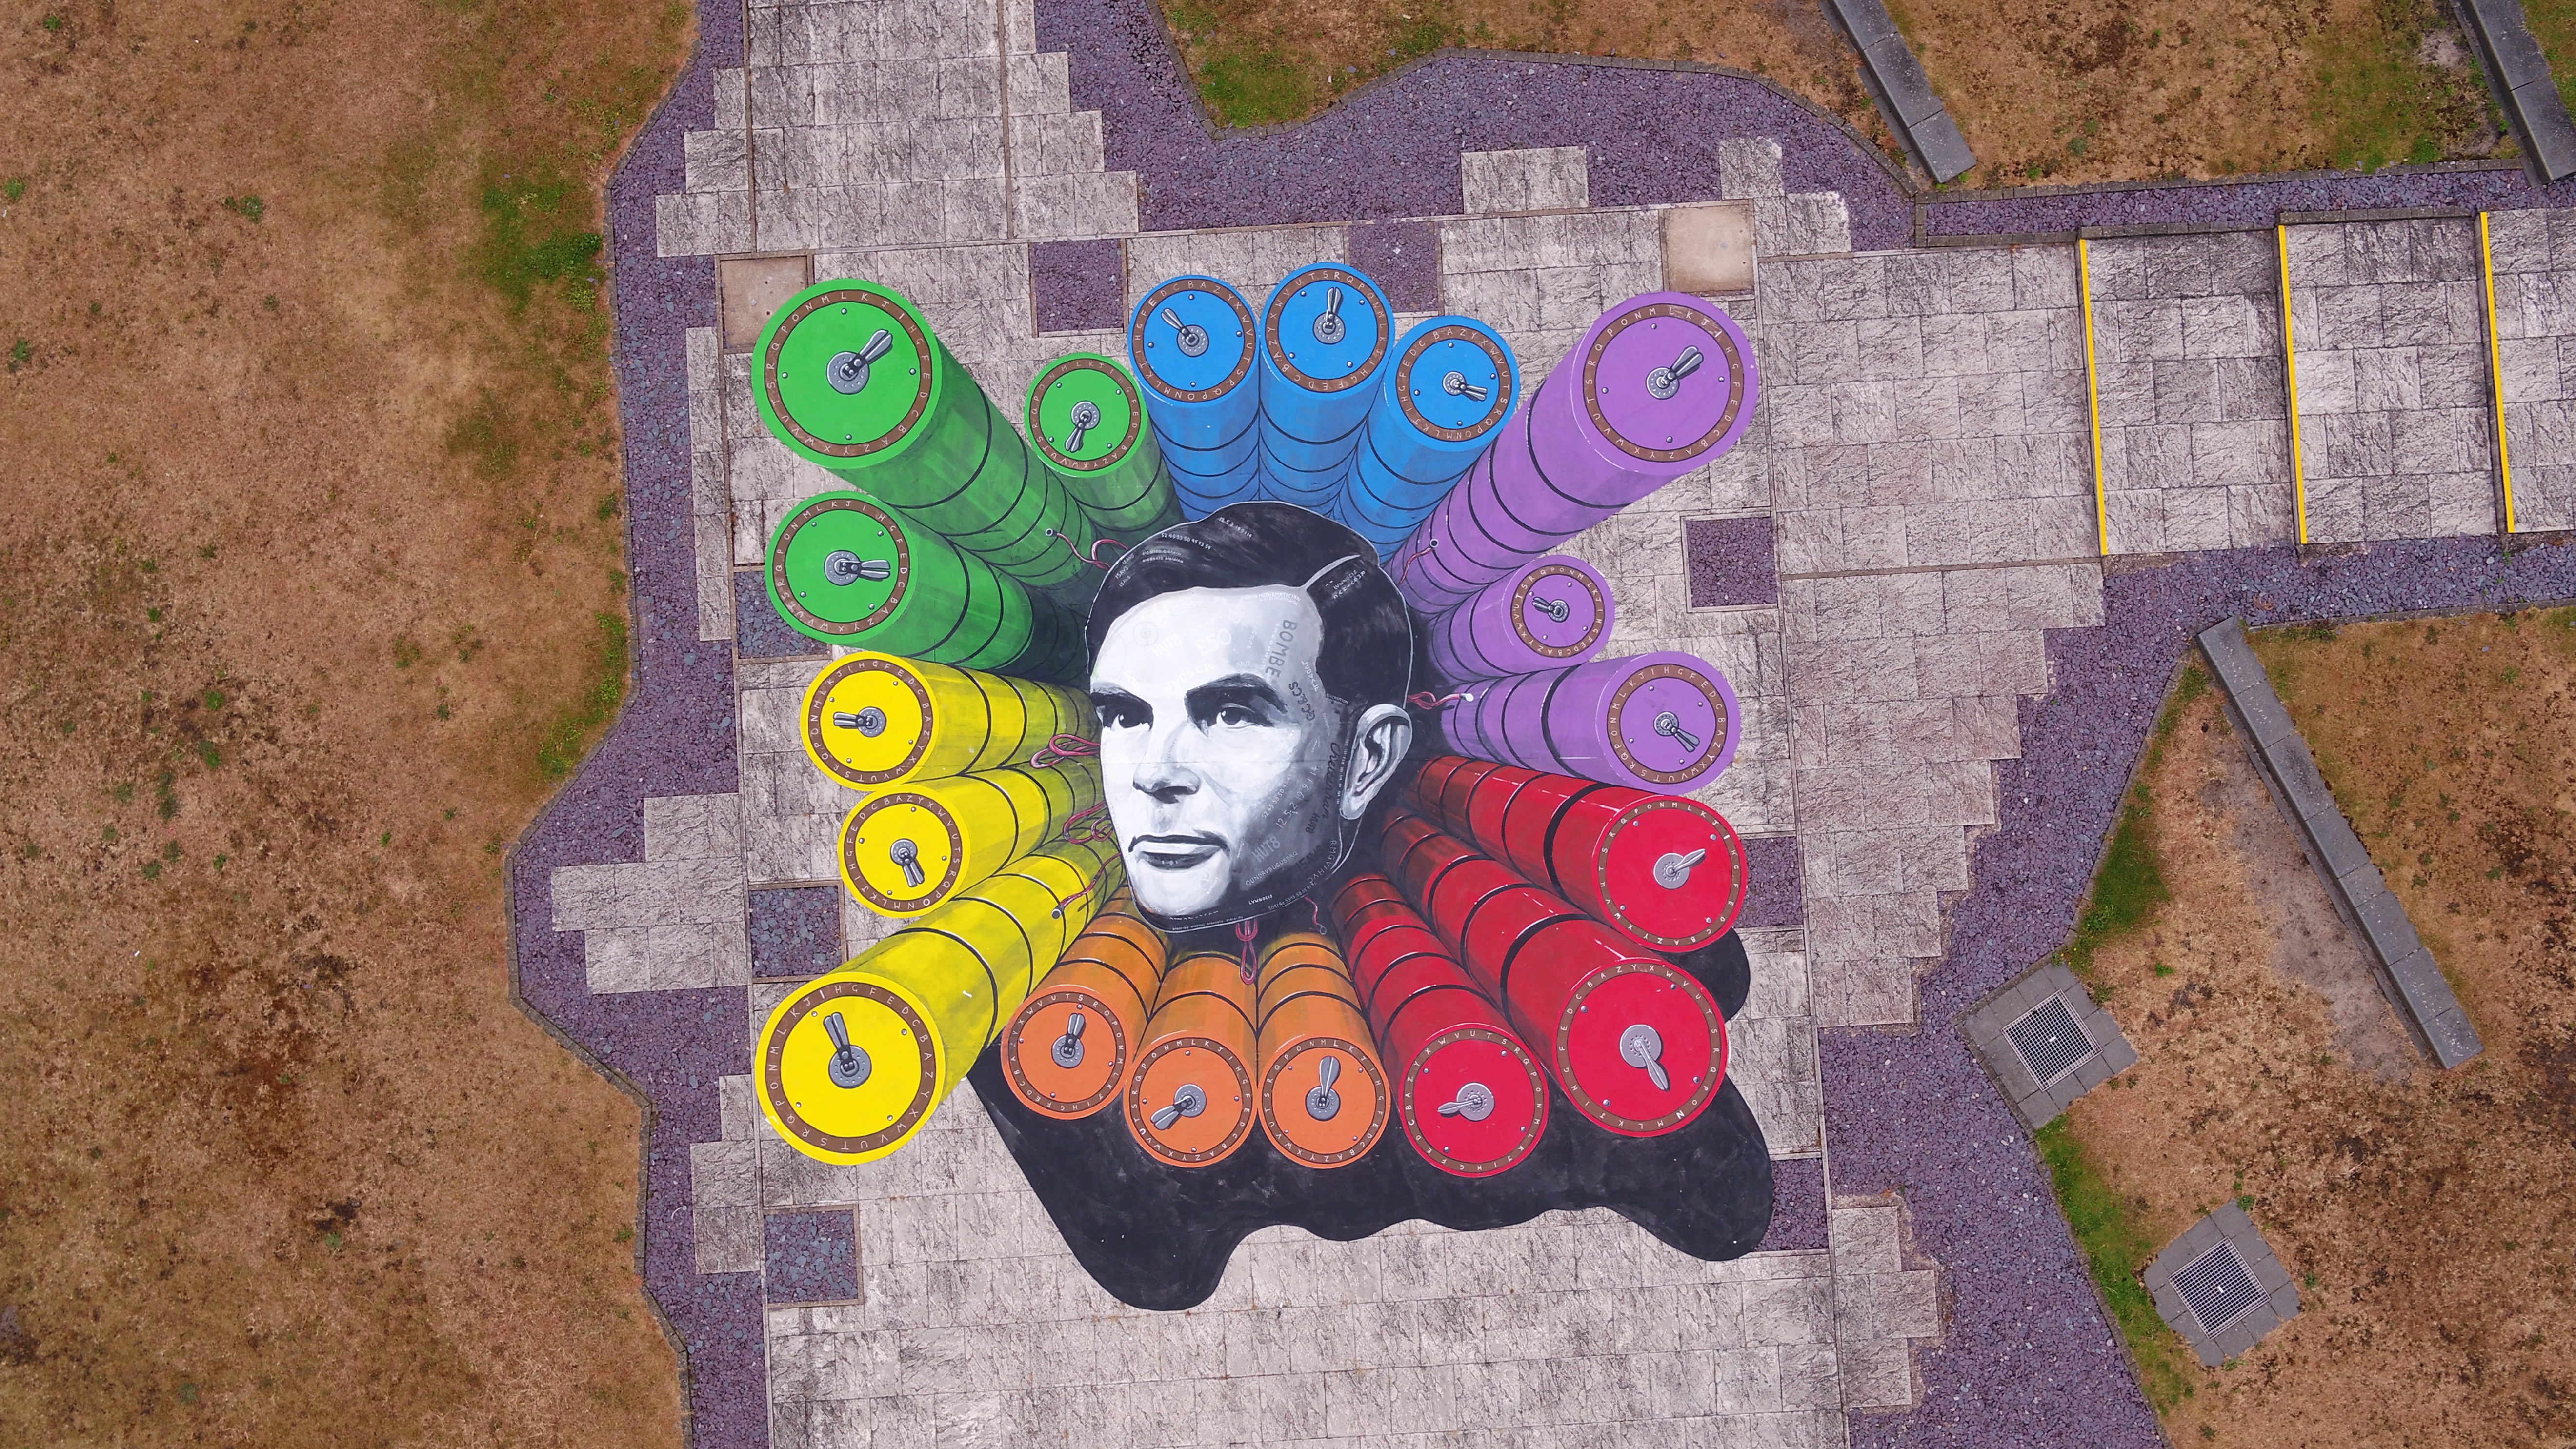 Una obra de arte en honor del matemático e informático Alan Turing, quien fue procesado por actividad homosexual en la década de 1950 (Foto: reuters)